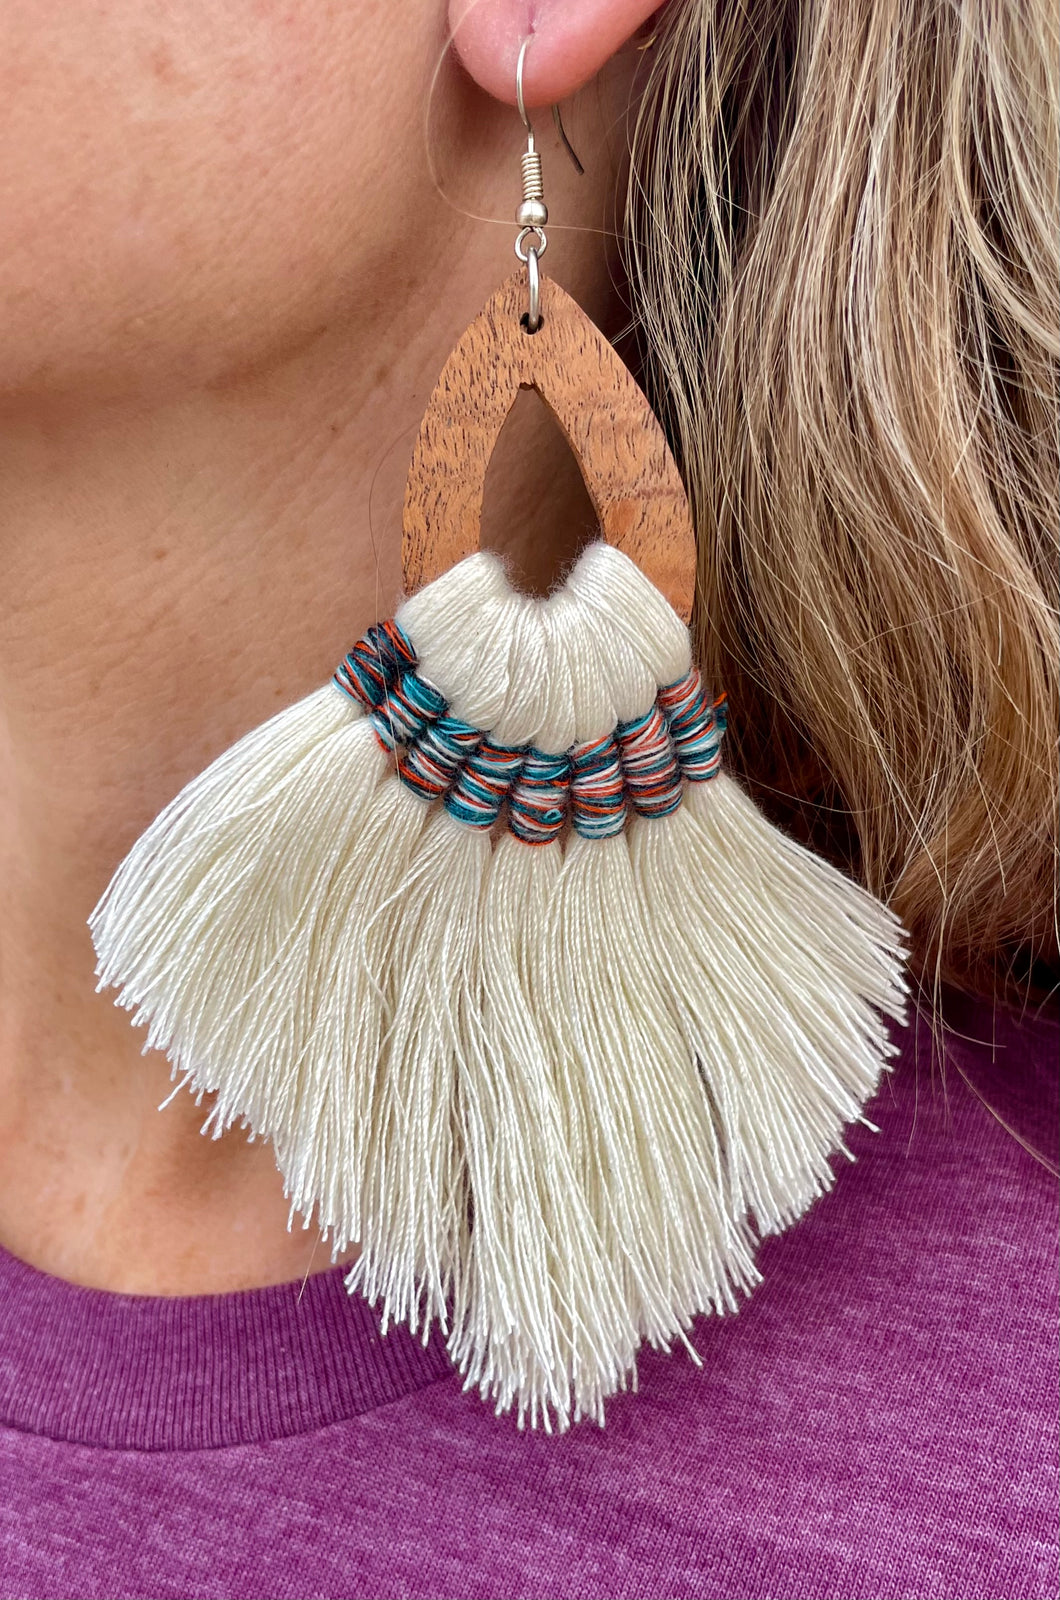 Gypsy Spirit earrings